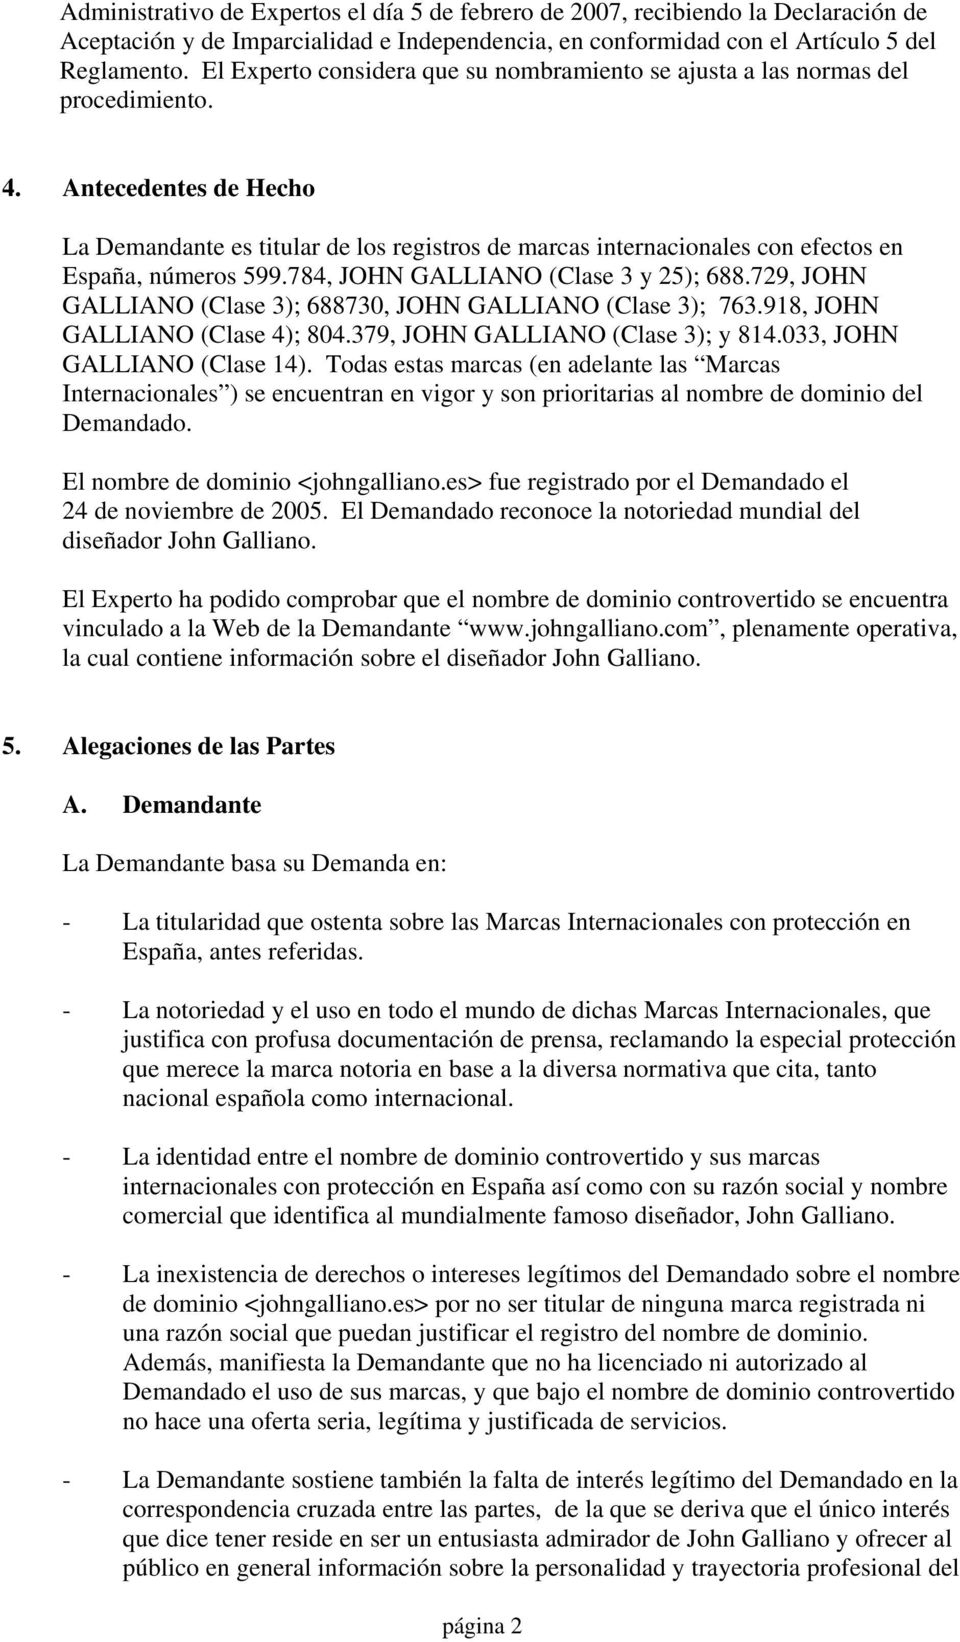 Antecedentes de Hecho La Demandante es titular de los registros de marcas internacionales con efectos en España, números 599.784, JOHN GALLIANO (Clase 3 y 25); 688.